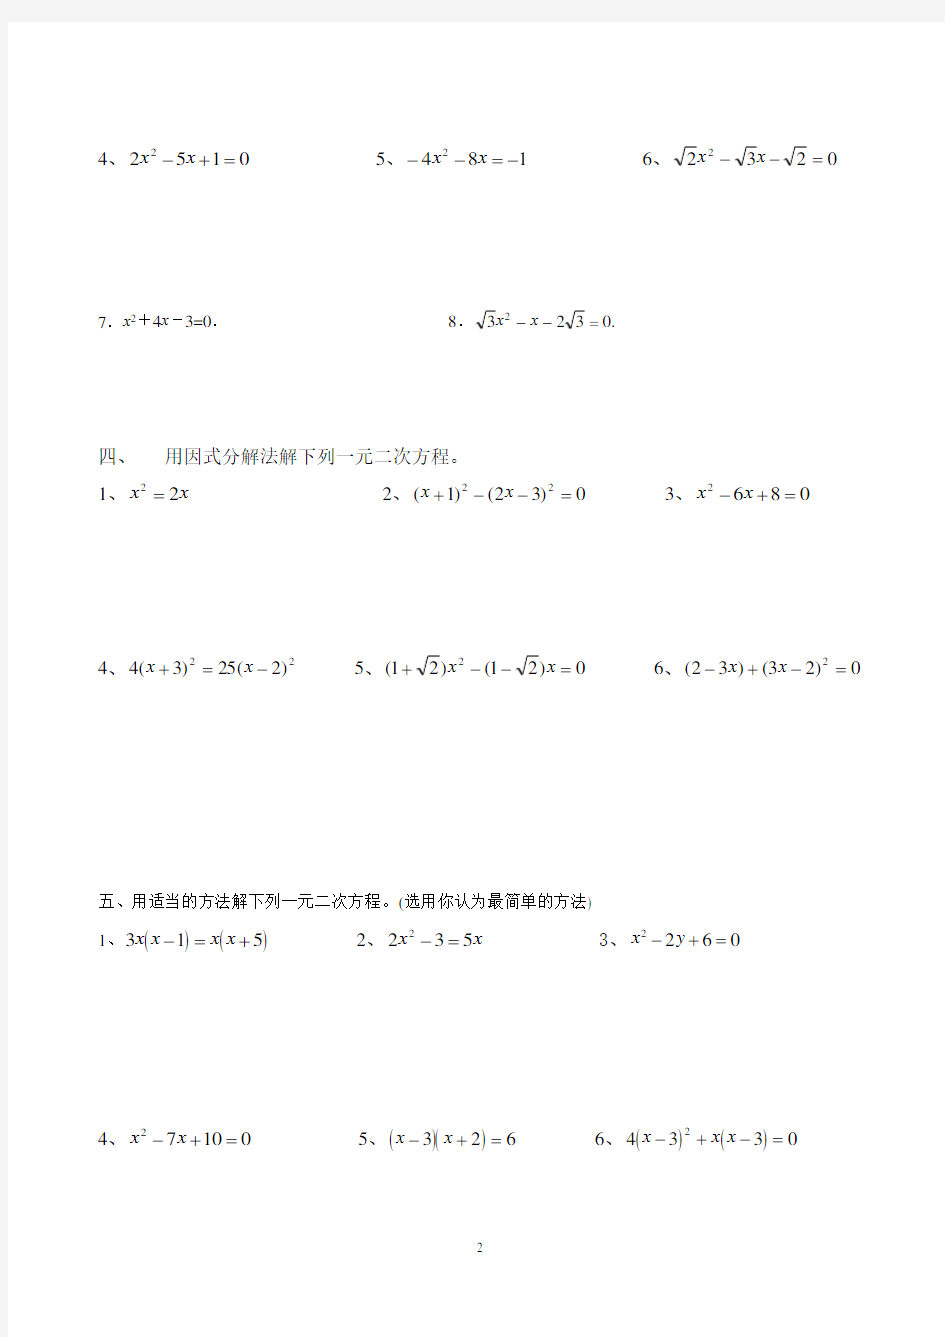 经典一元二次方程解法练习题(四种方法)